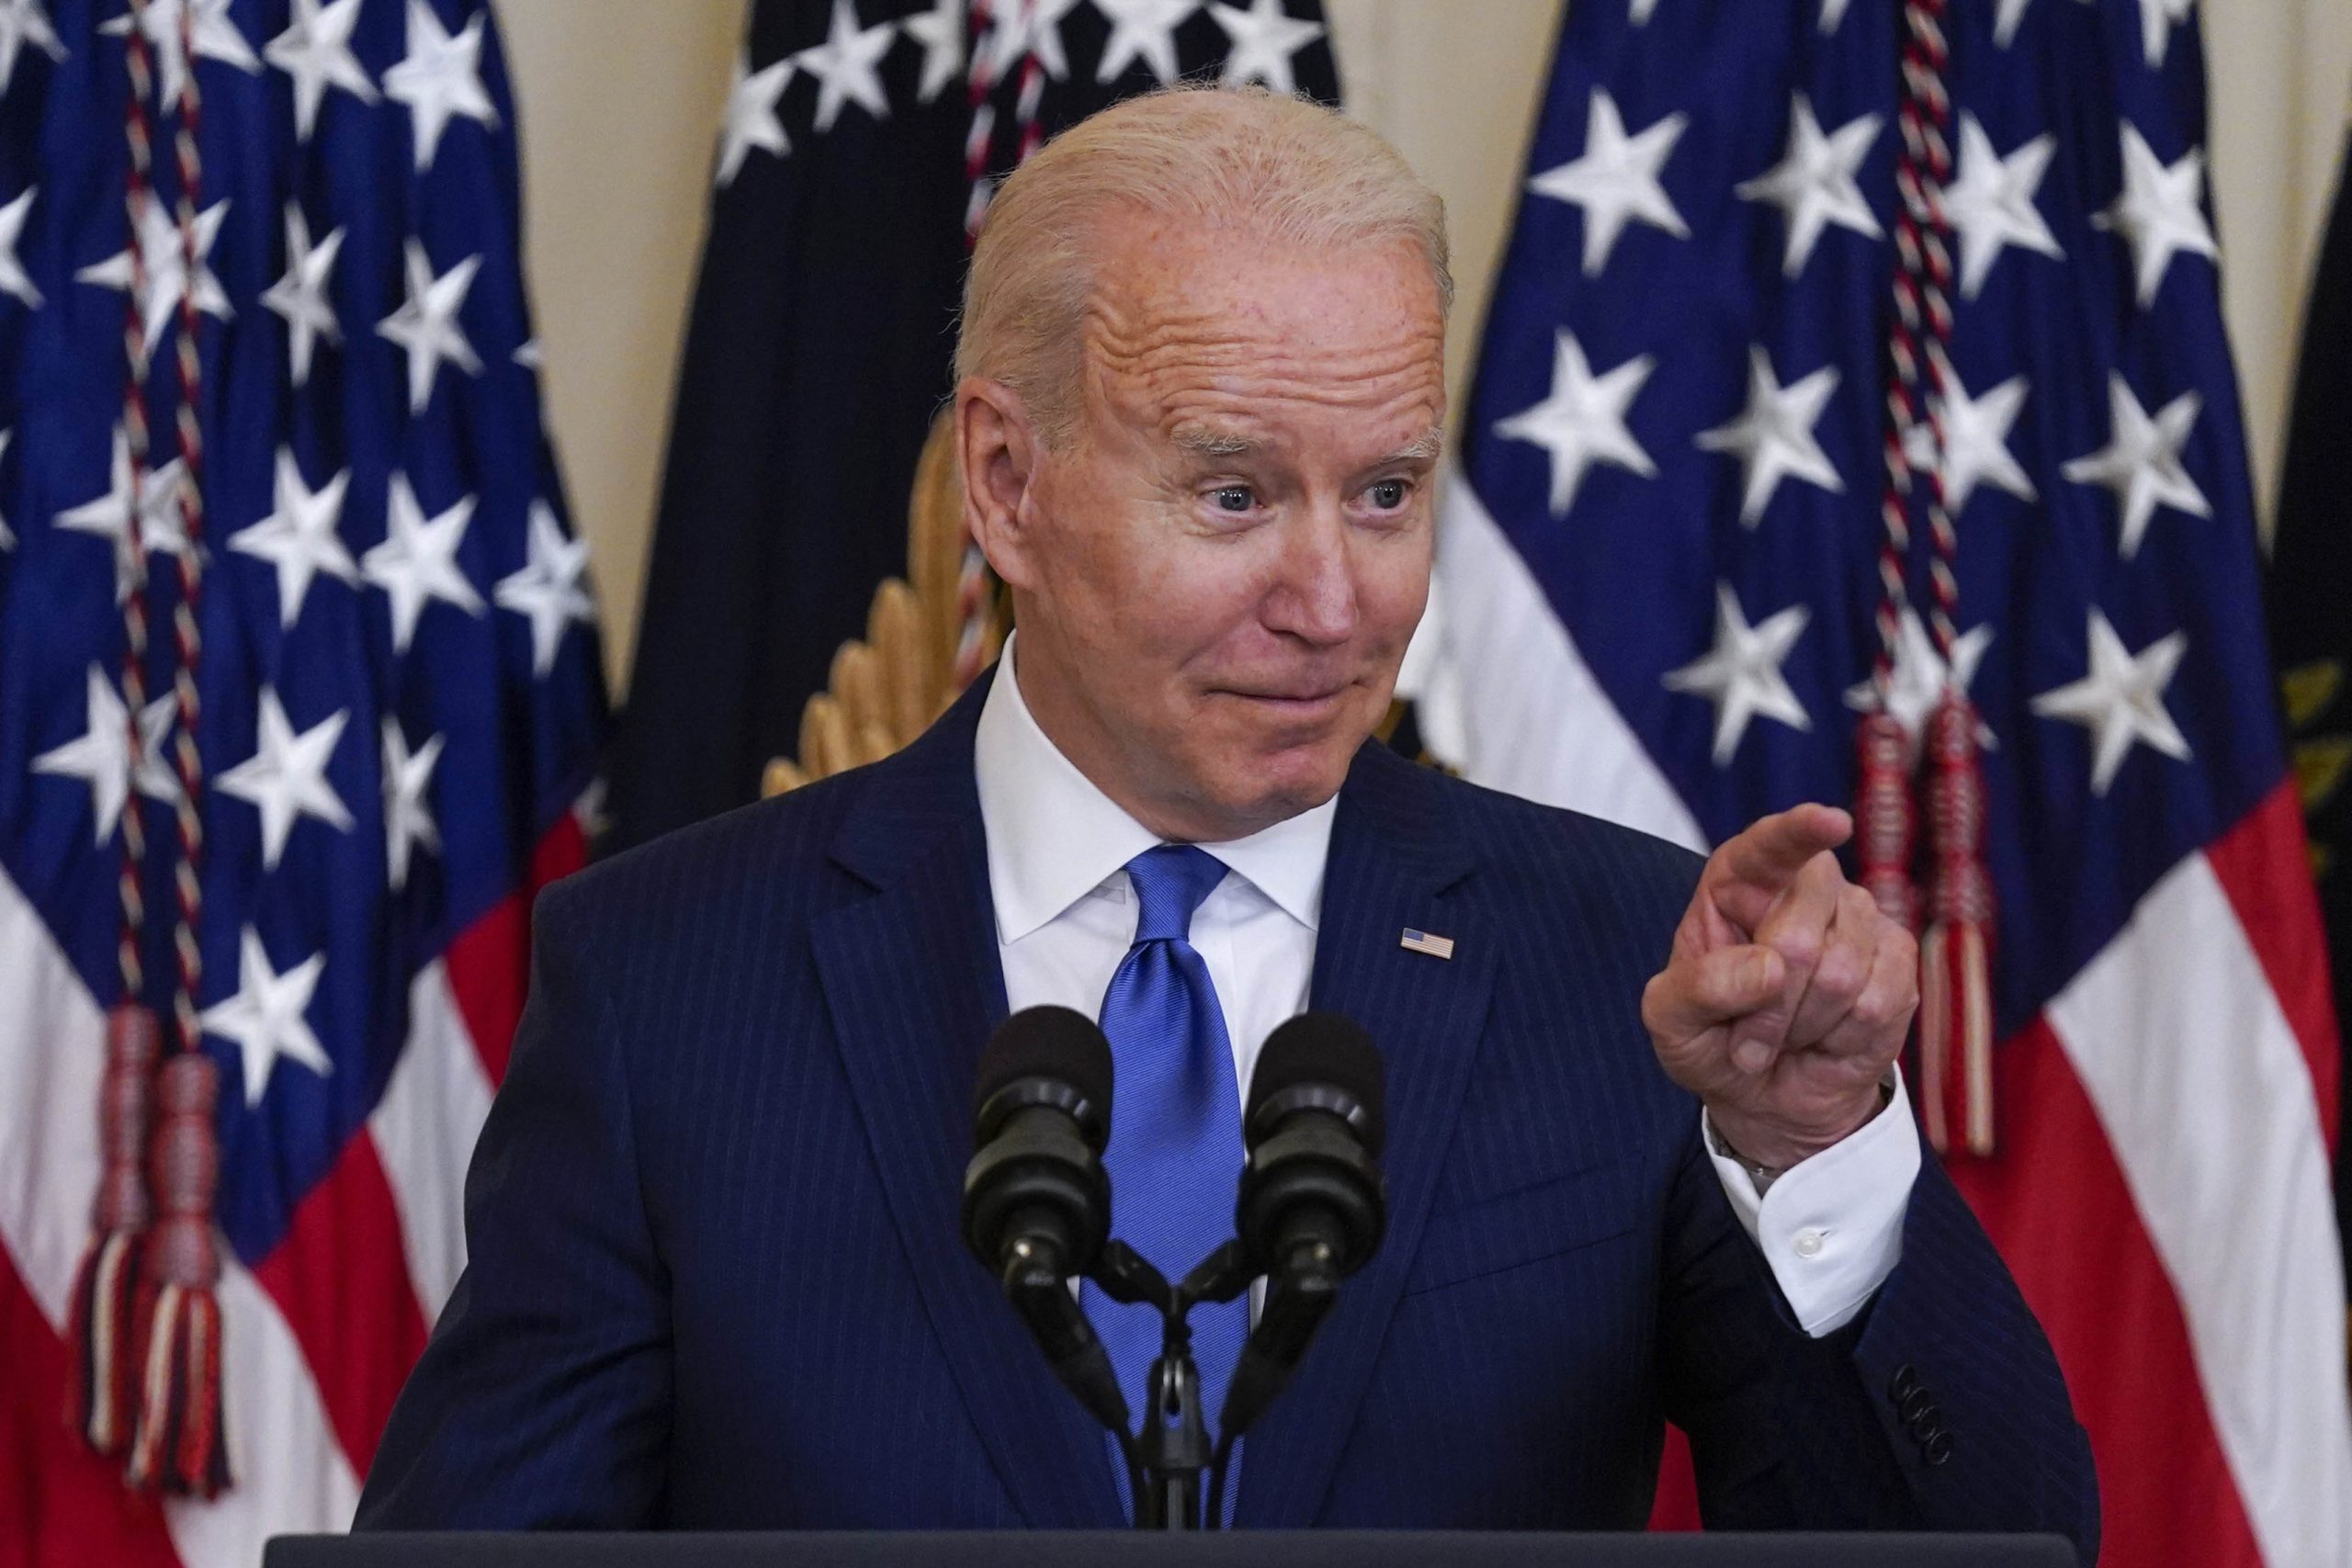 Joe Biden retracts veto threat on infrastructure plan after GOP pressure mounts